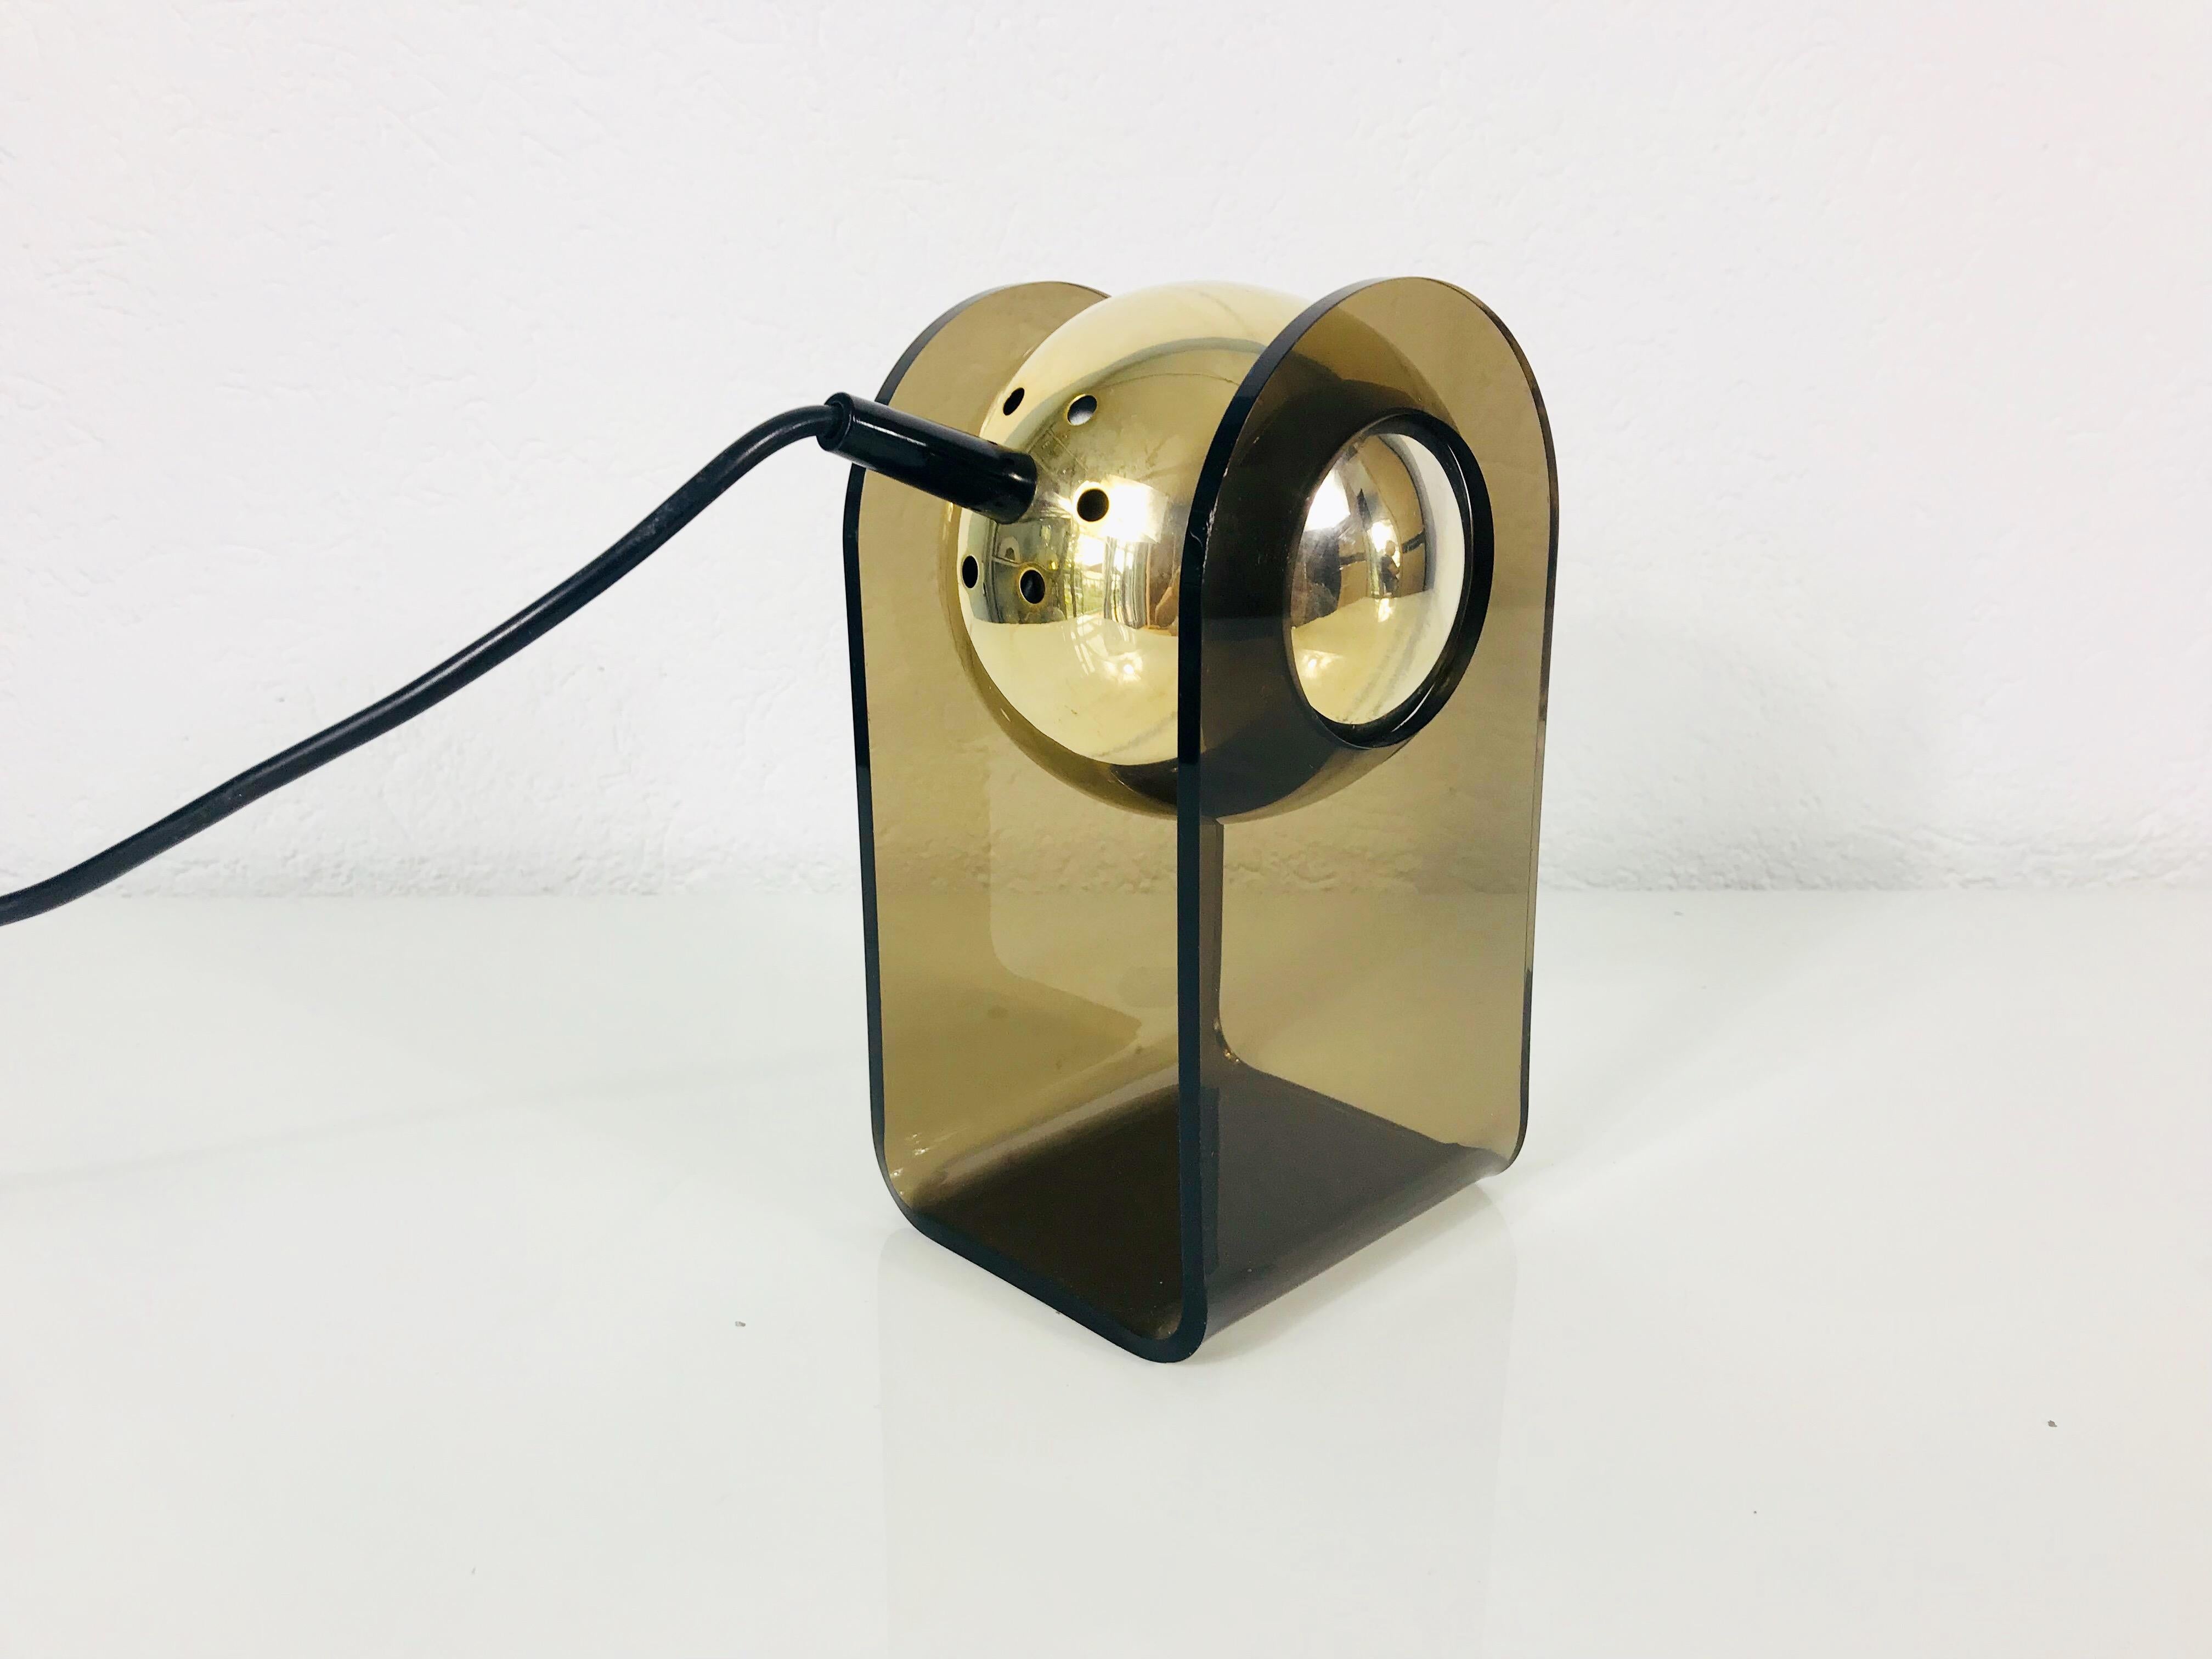 Eine schöne Tischlampe aus der Mitte des Jahrhunderts, entworfen von Gino Sarfatti für Arteluce im Jahr 1968. Sie fasziniert mit ihrem schönen braunen Farbton und dem Plexiglasgehäuse. Die Lampen sind in einem sehr guten Vintage-Zustand und